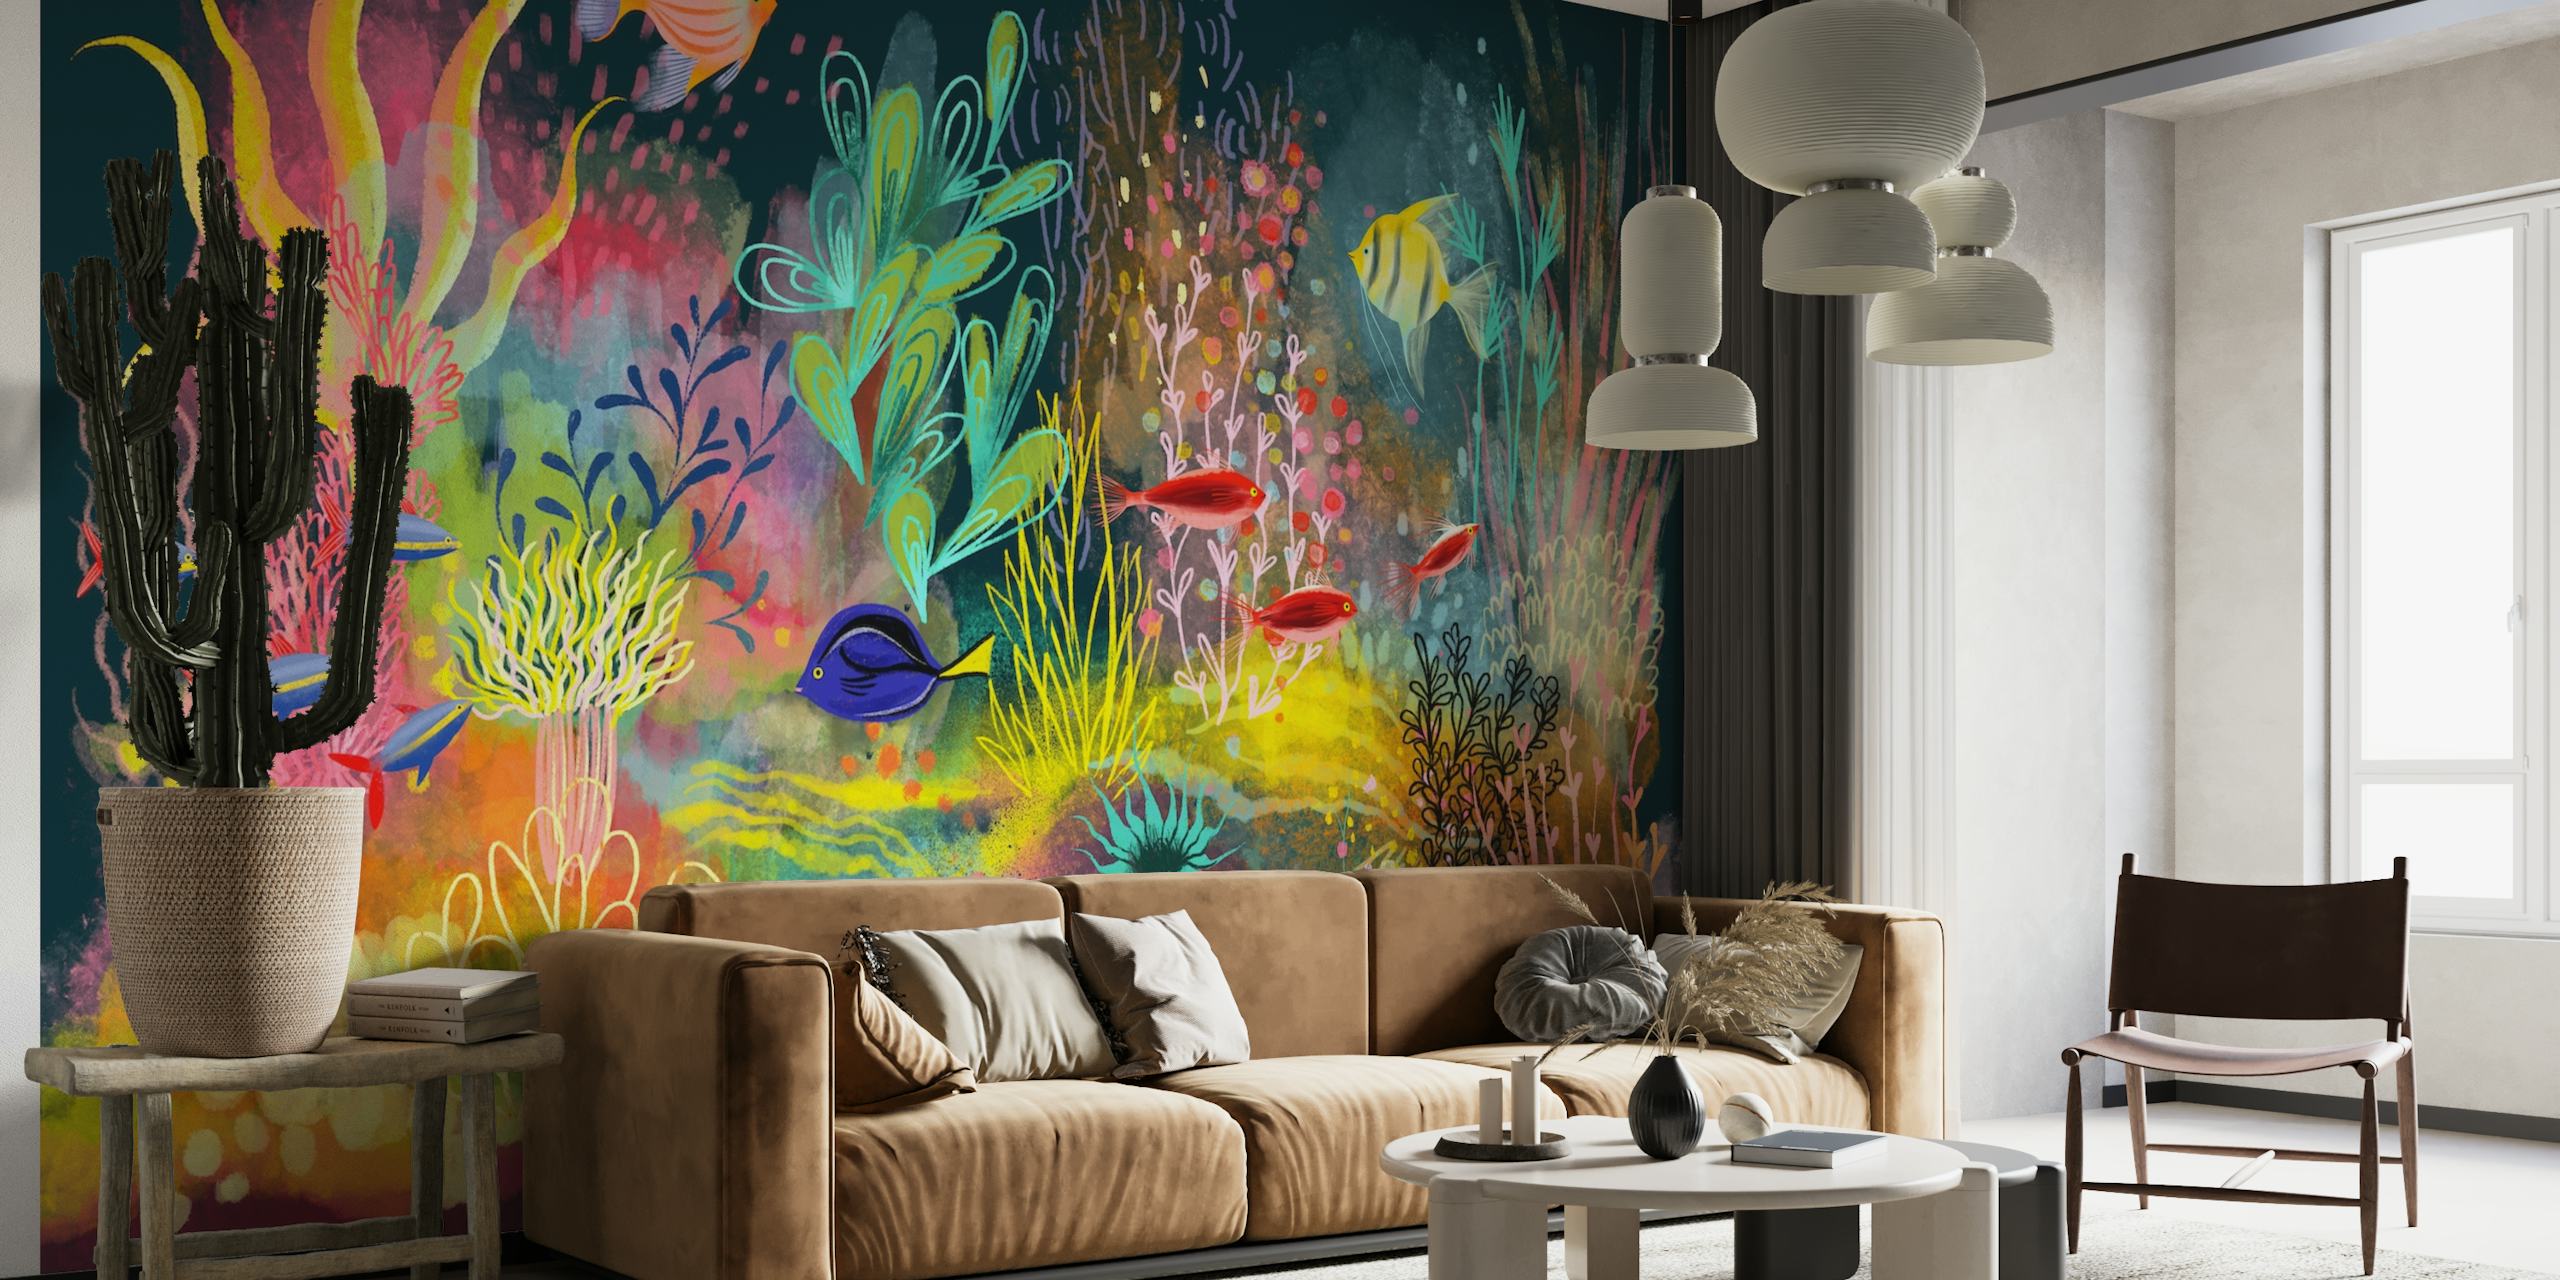 Färgglad undervattensscen med tropiska fiskar och korall väggmålning